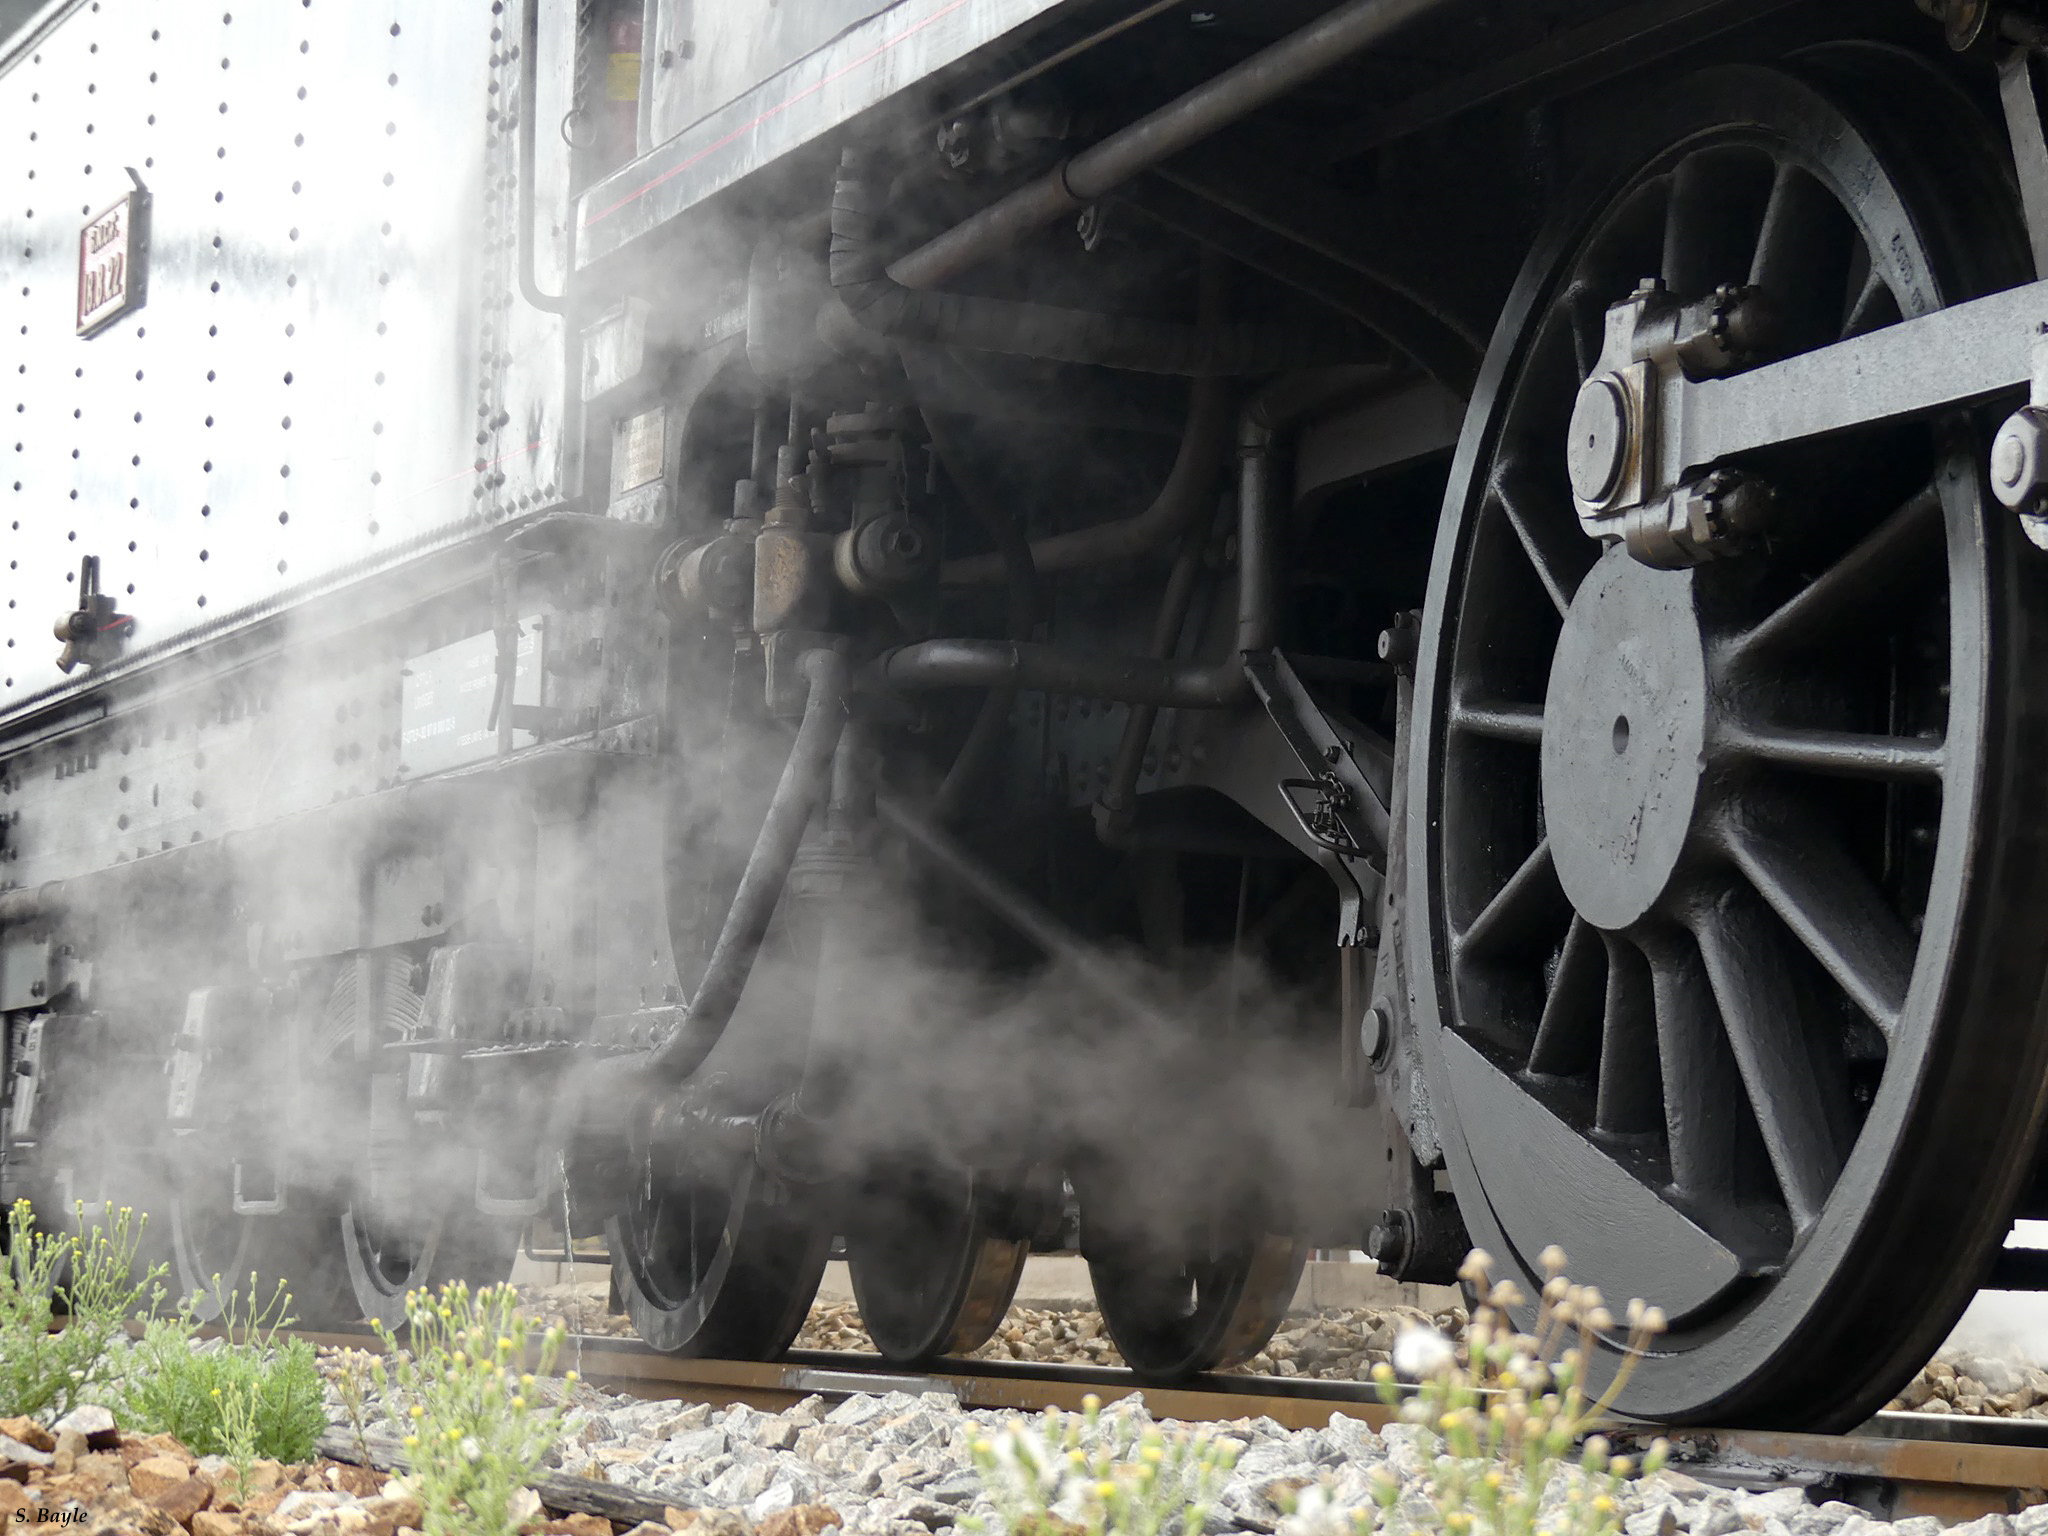 Limoges passionnement locomotive